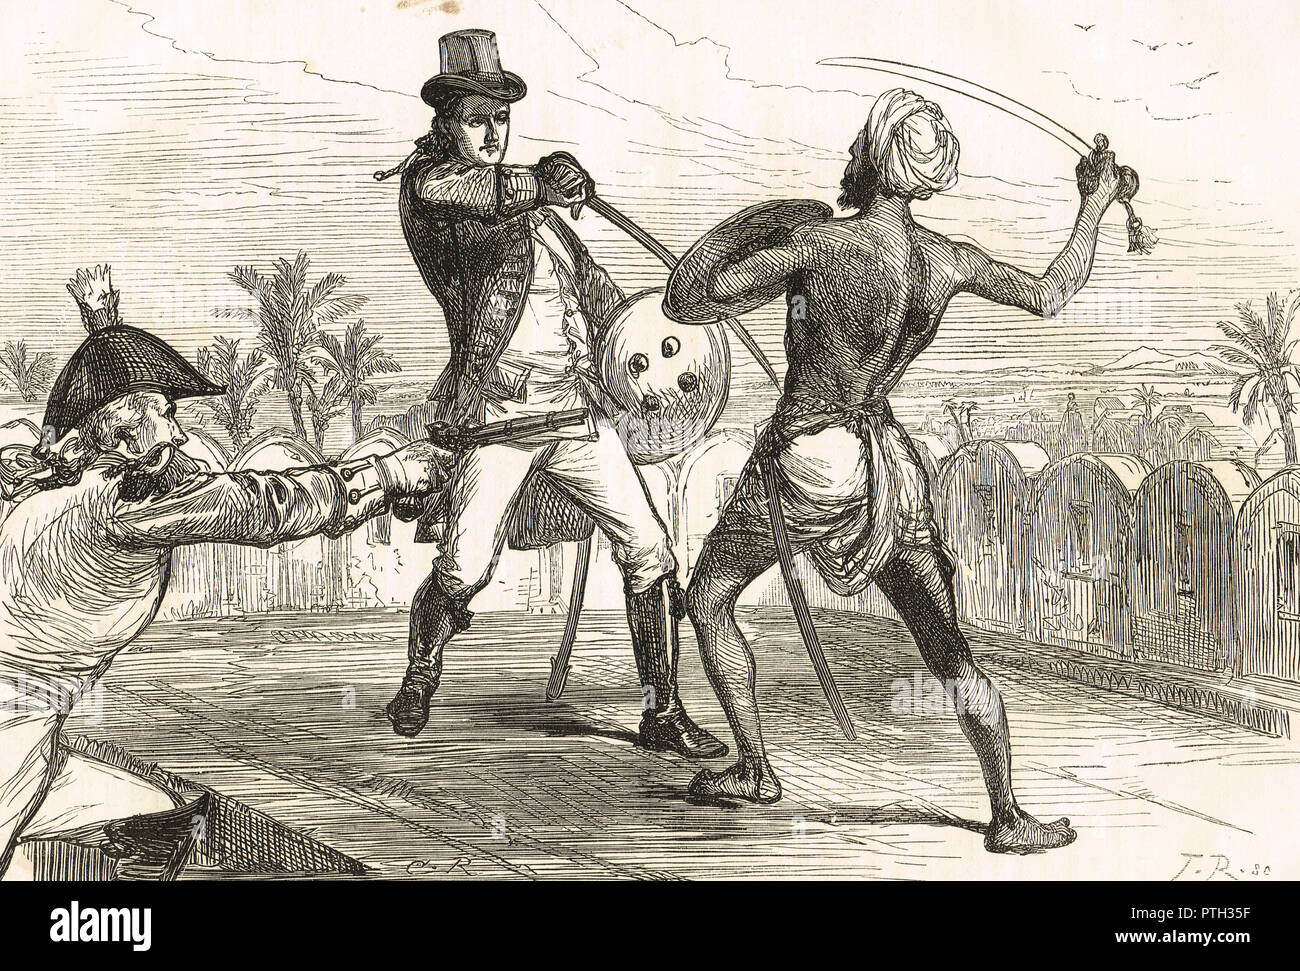 L'honorable Frederick shore membre de la fonction publique du Bengale, lutte contre une Goojur en combat au corps à corps, pendant la rébellion par Gujjars de New Delhi, octobre 1824 Banque D'Images